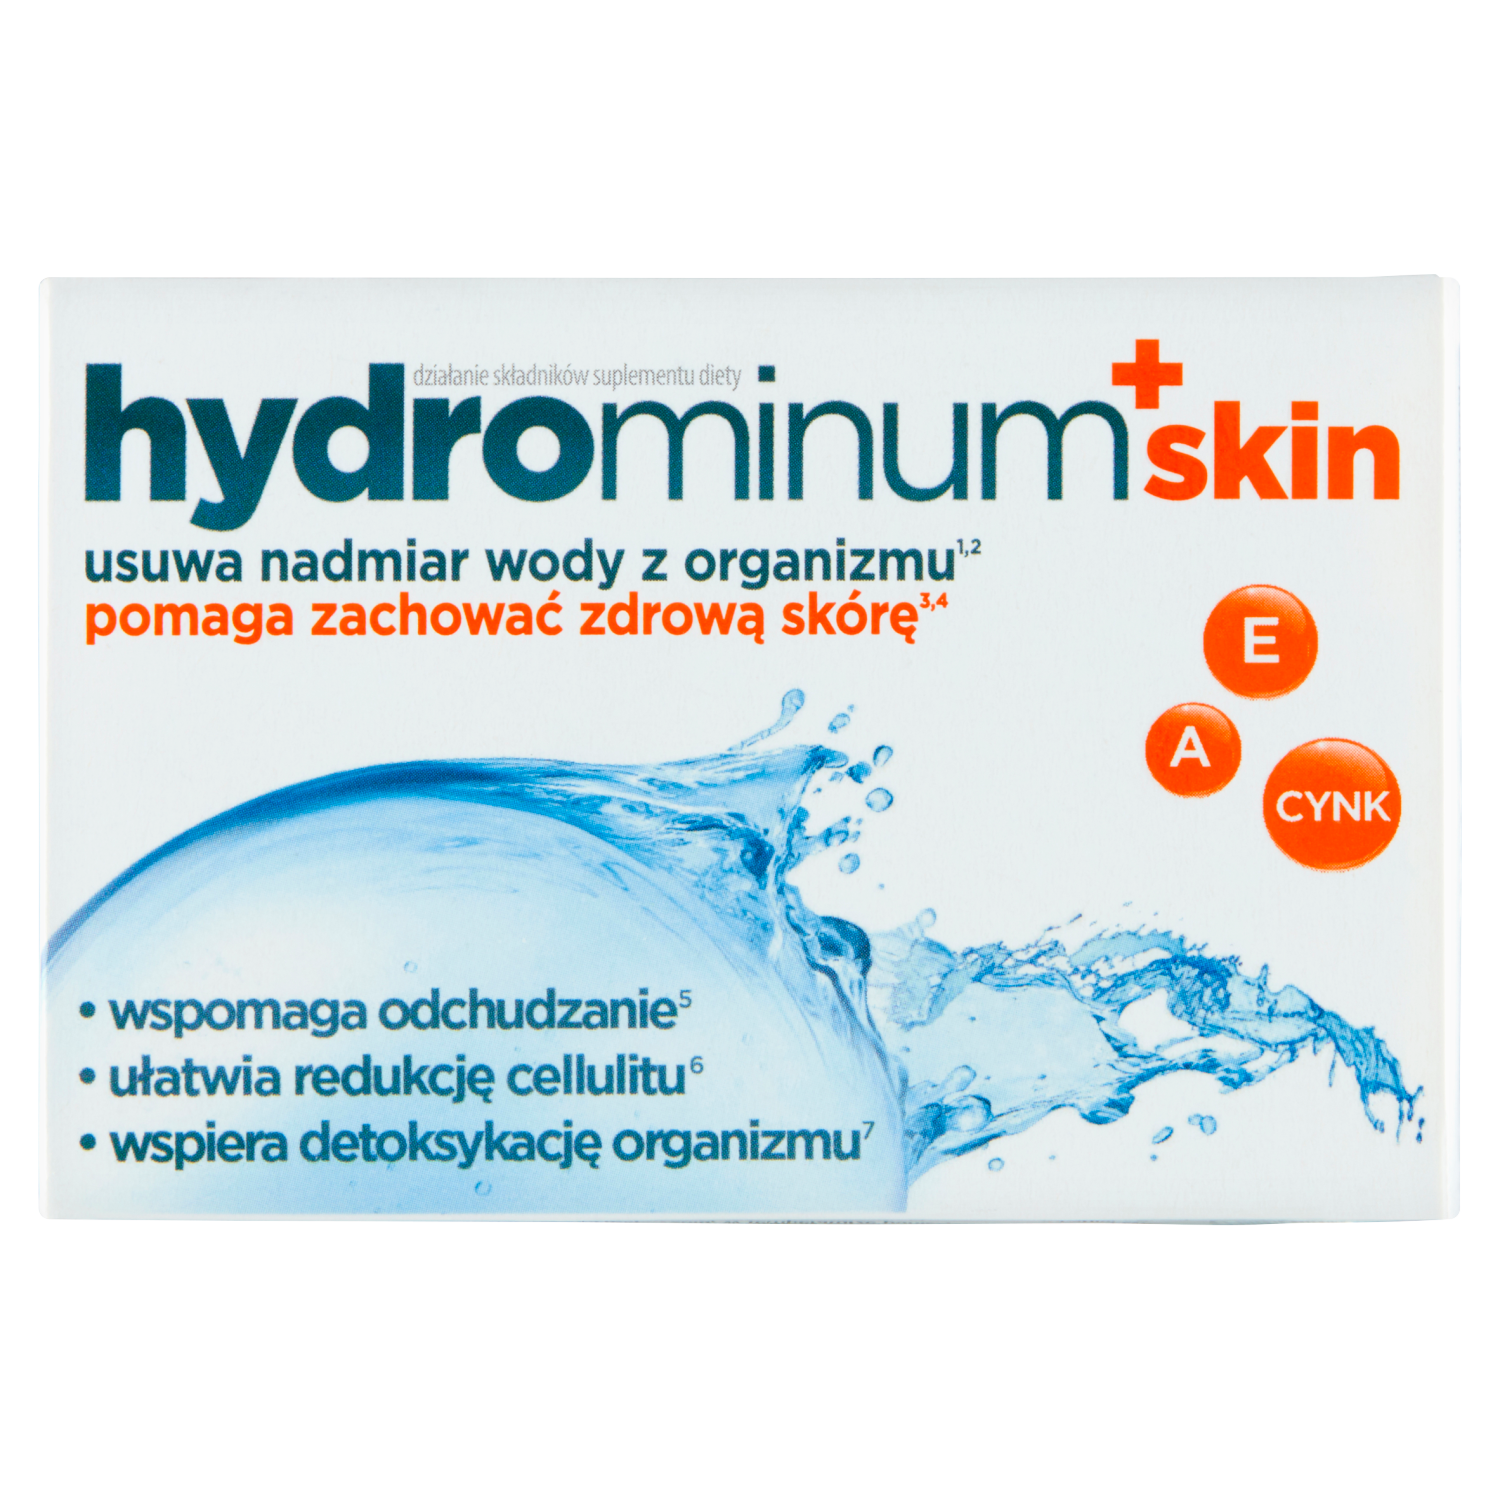 liporedium биологически активная добавка 60 таблеток 1 упаковка Hydrominum биологически активная добавка, 30 таблеток/1 упаковка